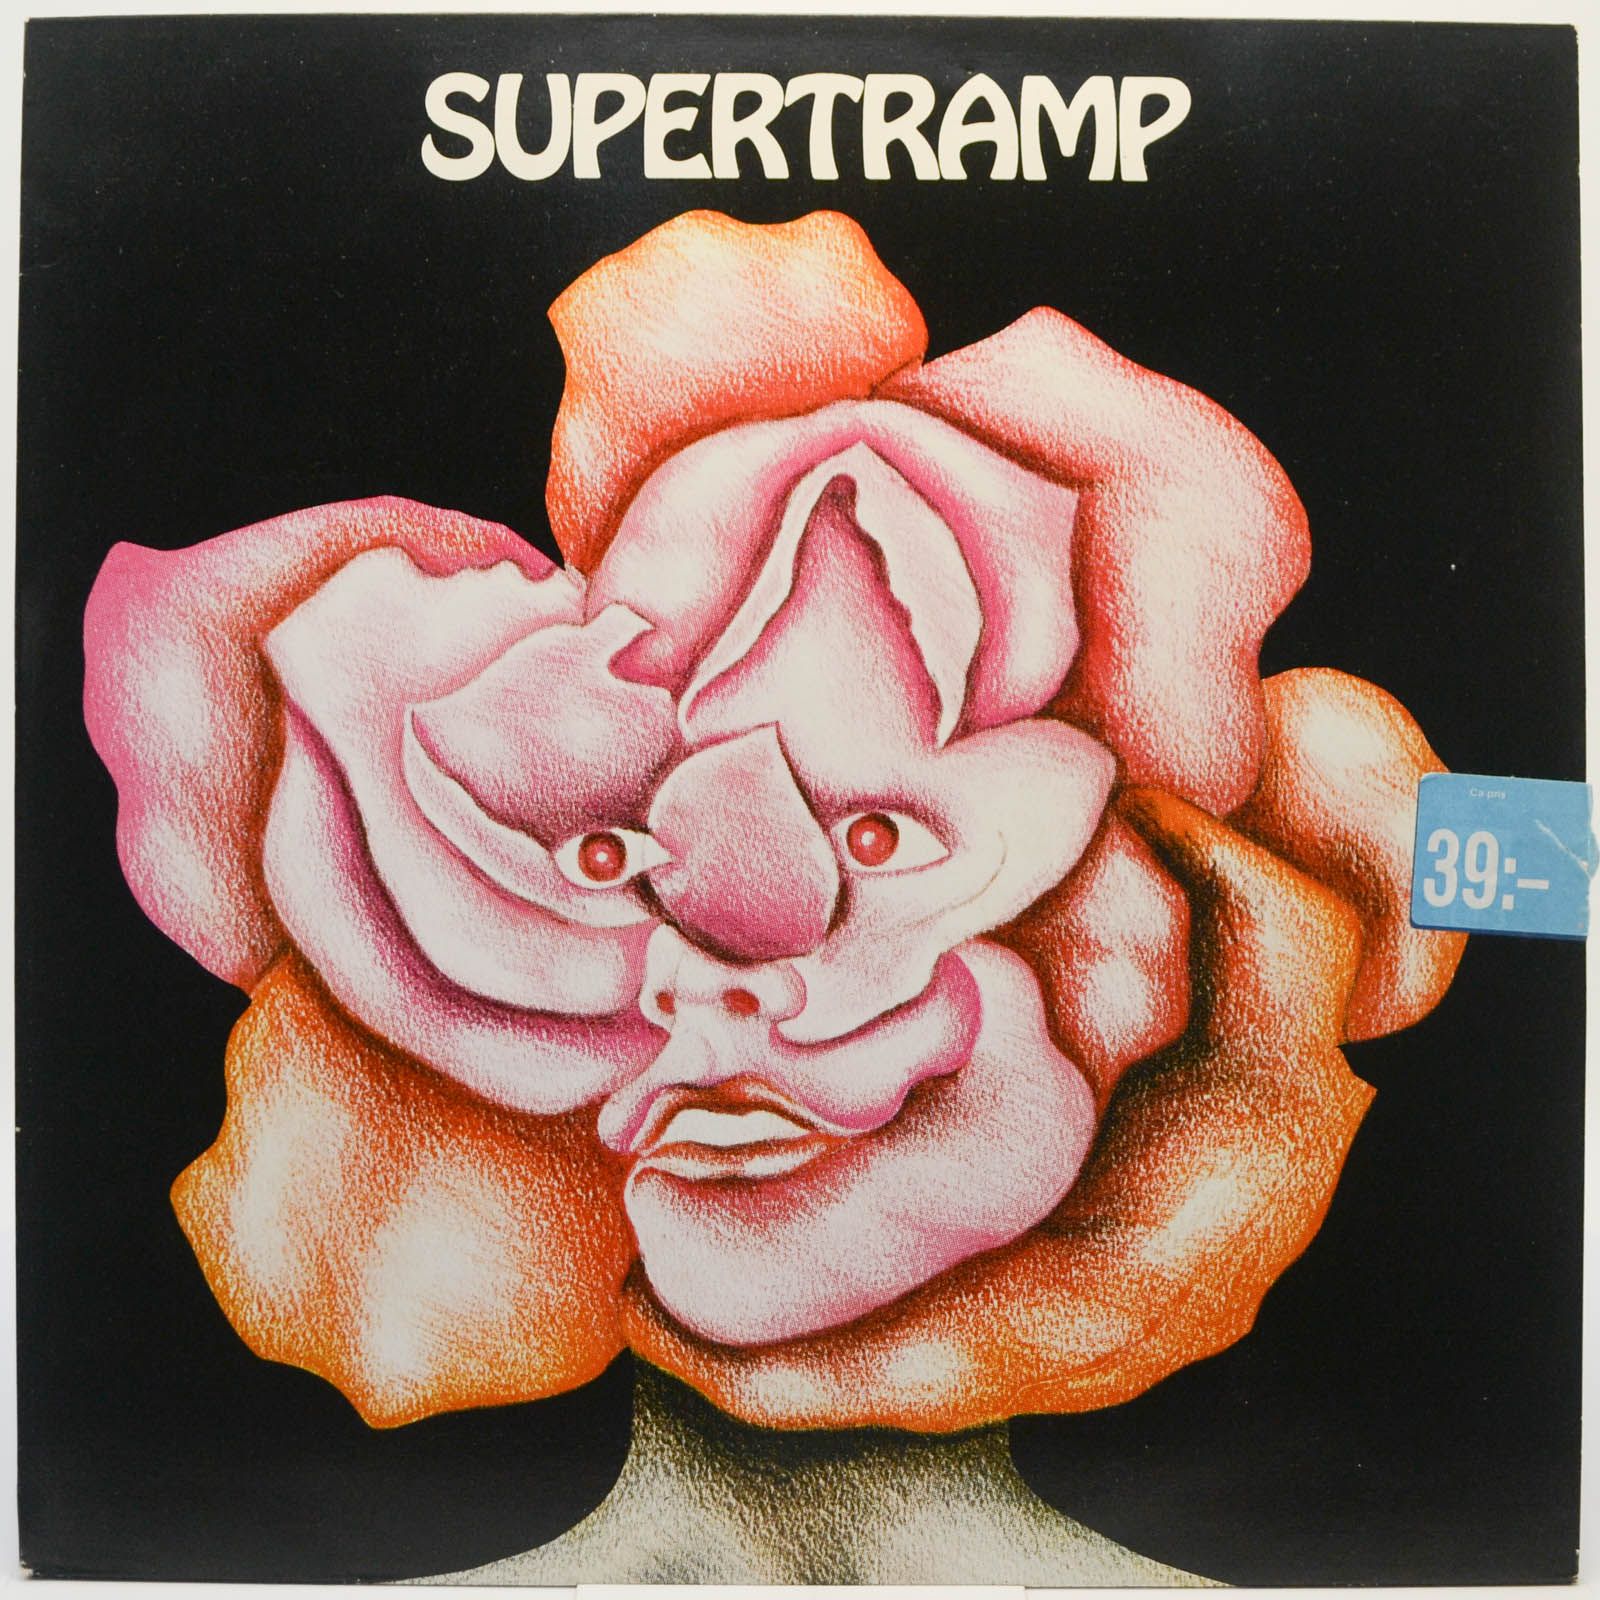 Supertramp — Supertramp, 1970